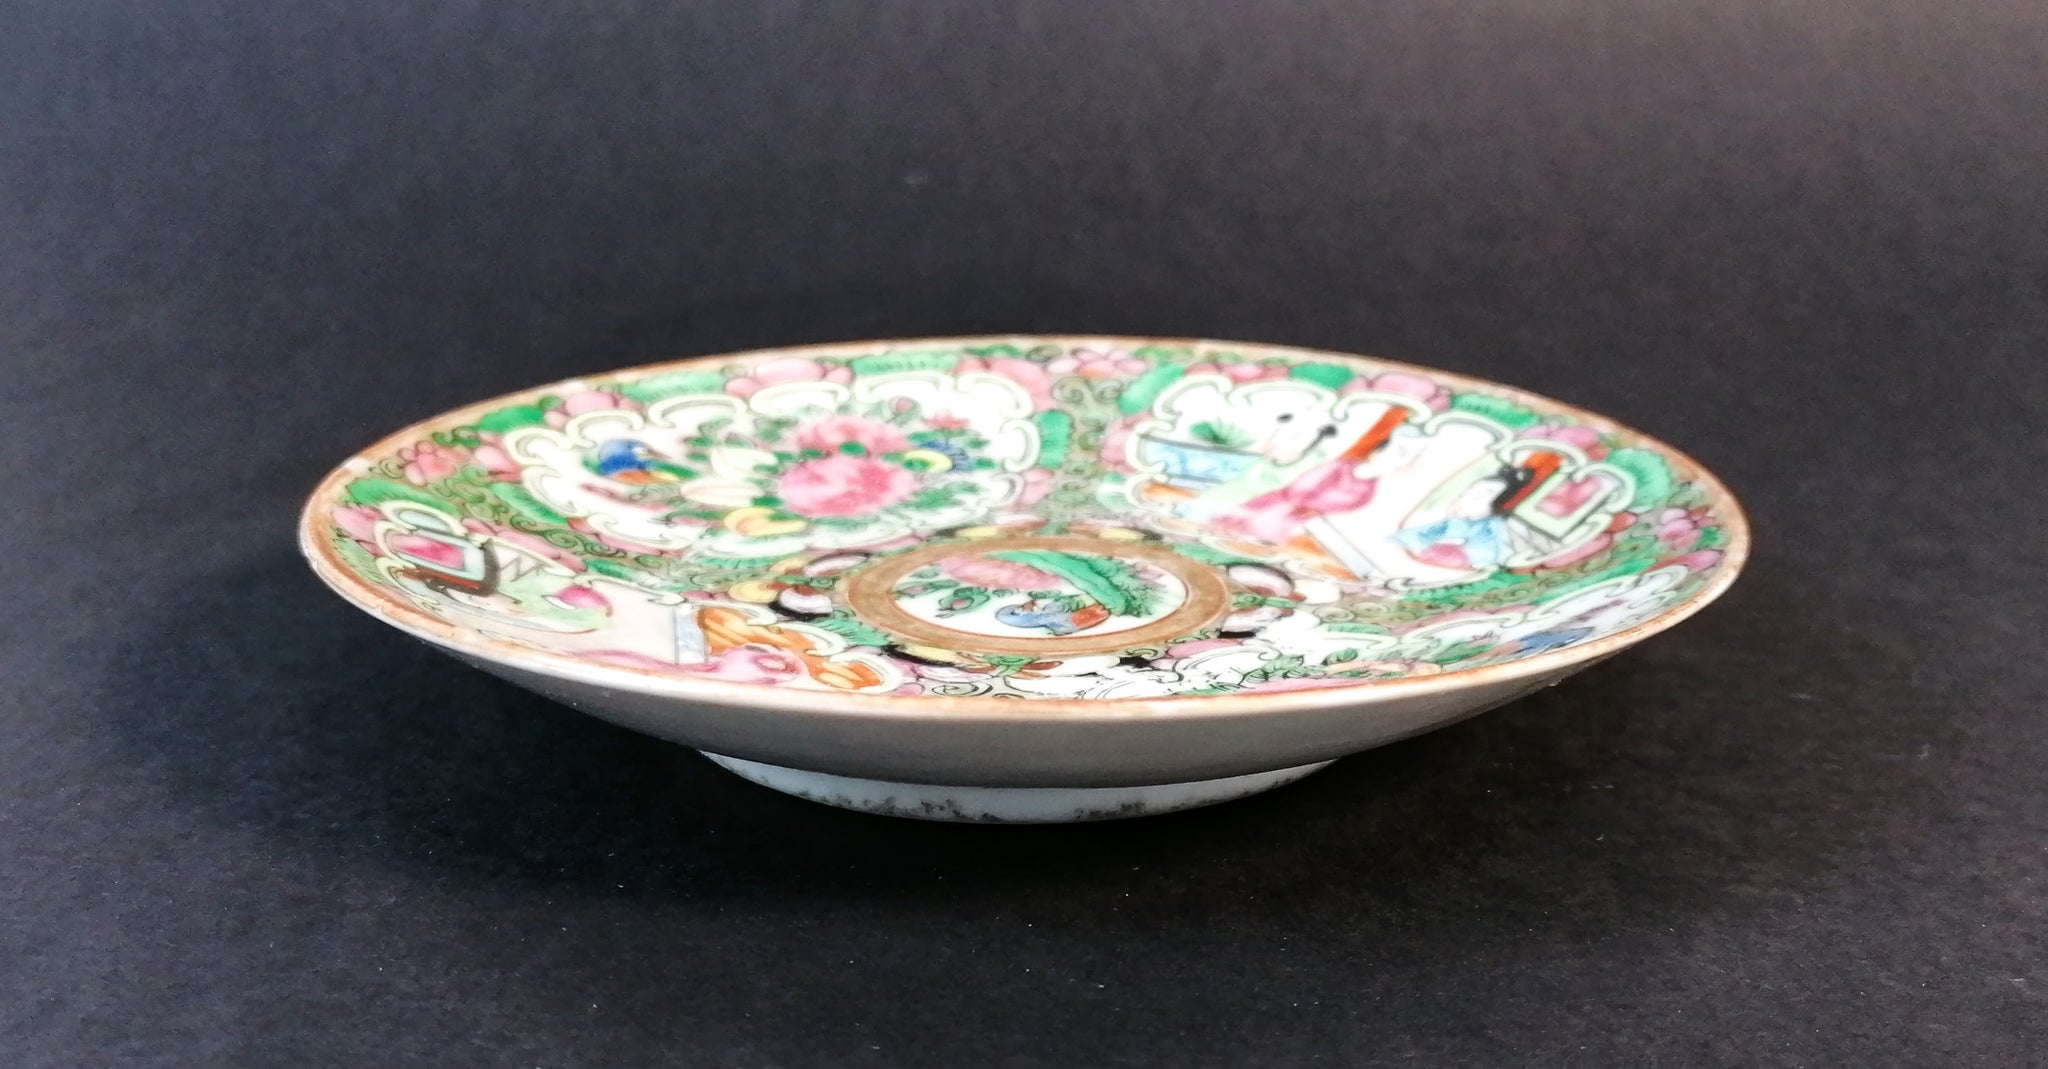 piattino porcellana cina famille rose dipinta smaltata epoca 800 piatto antico 1